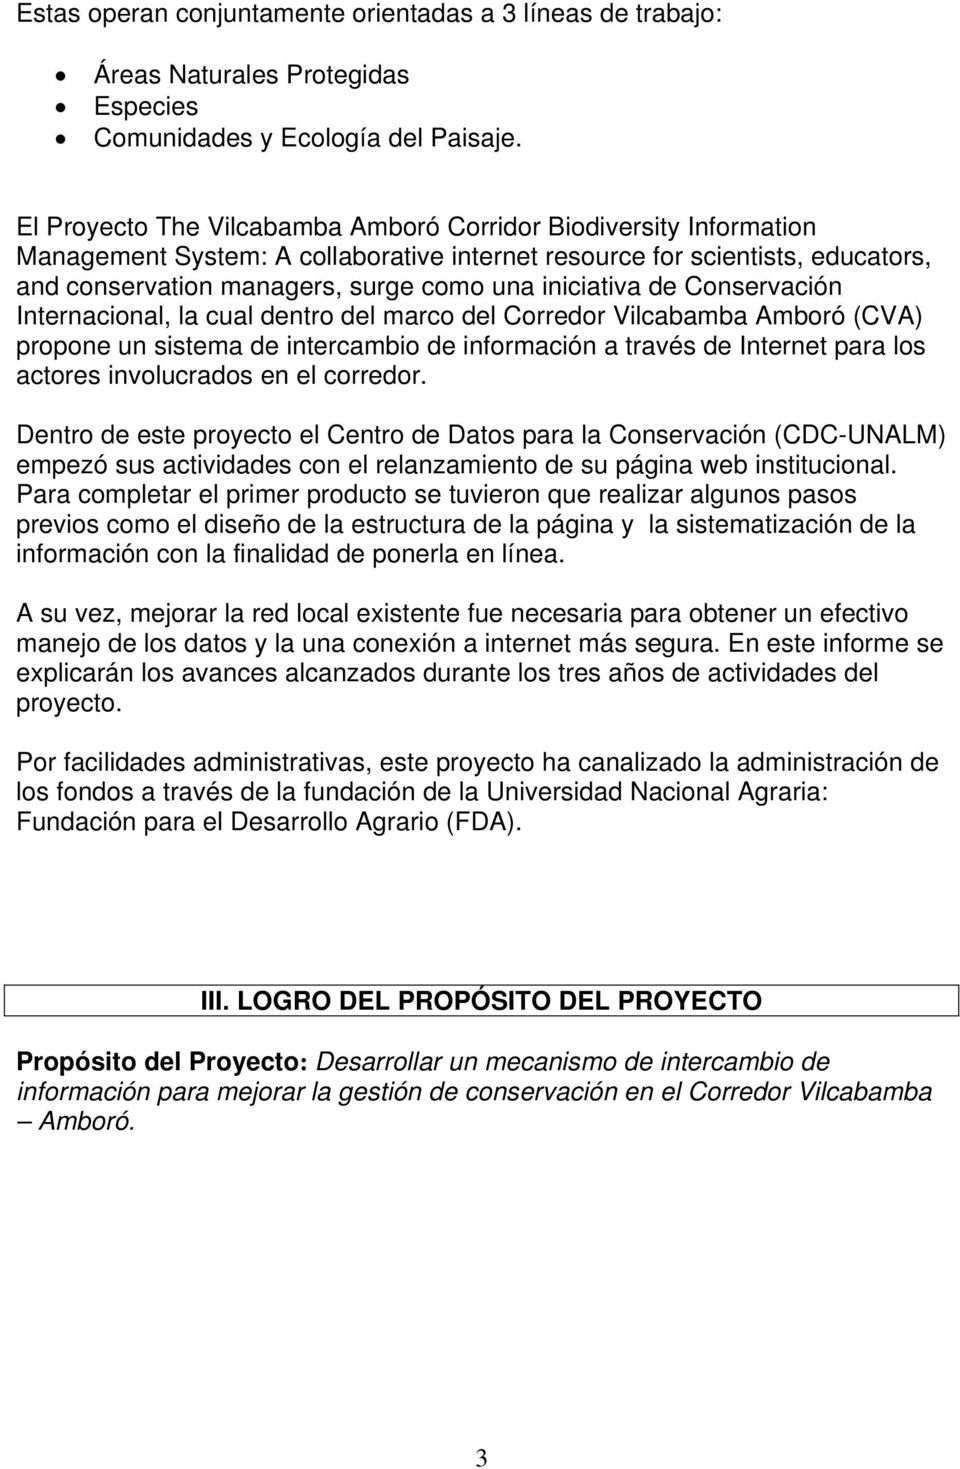 iniciativa de Conservación Internacional, la cual dentro del marco del Corredor Vilcabamba Amboró (CVA) propone un sistema de intercambio de información a través de Internet para los actores